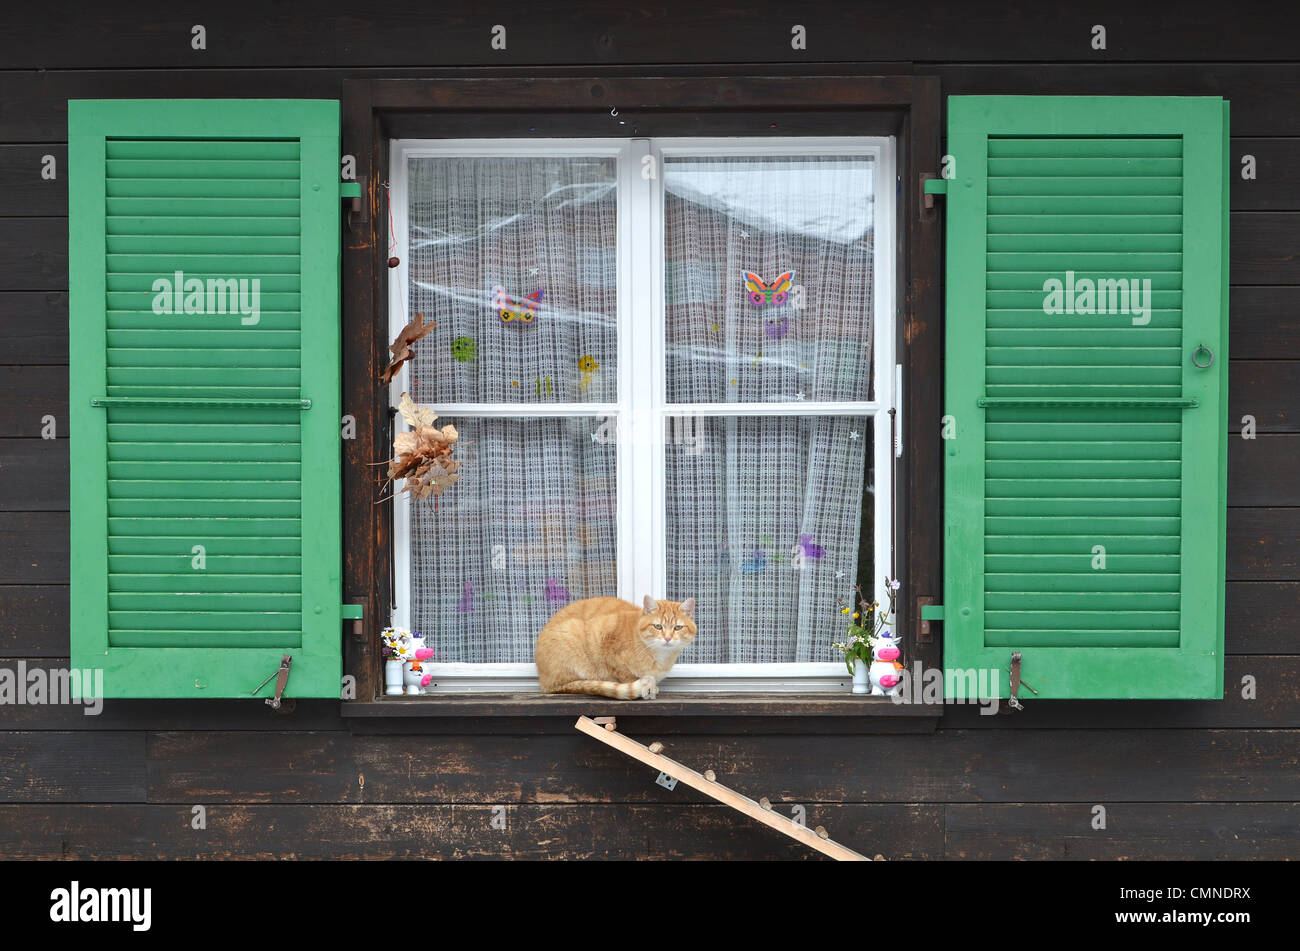 Ingwer Katze saß auf einem Fensterbrett. Aufnahme in Mürren in der Schweiz  Stockfotografie - Alamy